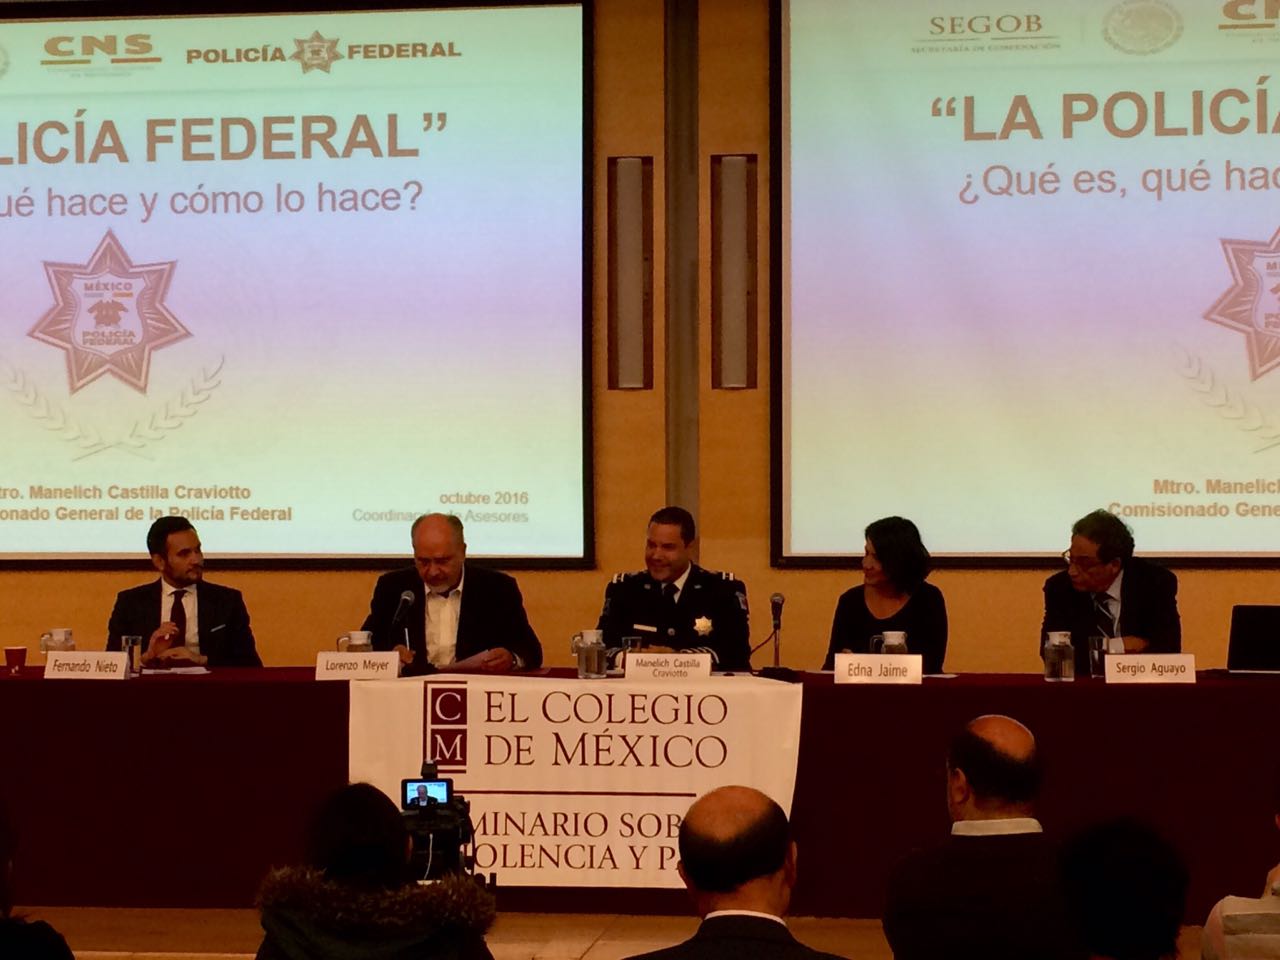 México Evalúa llama a profesionalizar a la Policía Federal